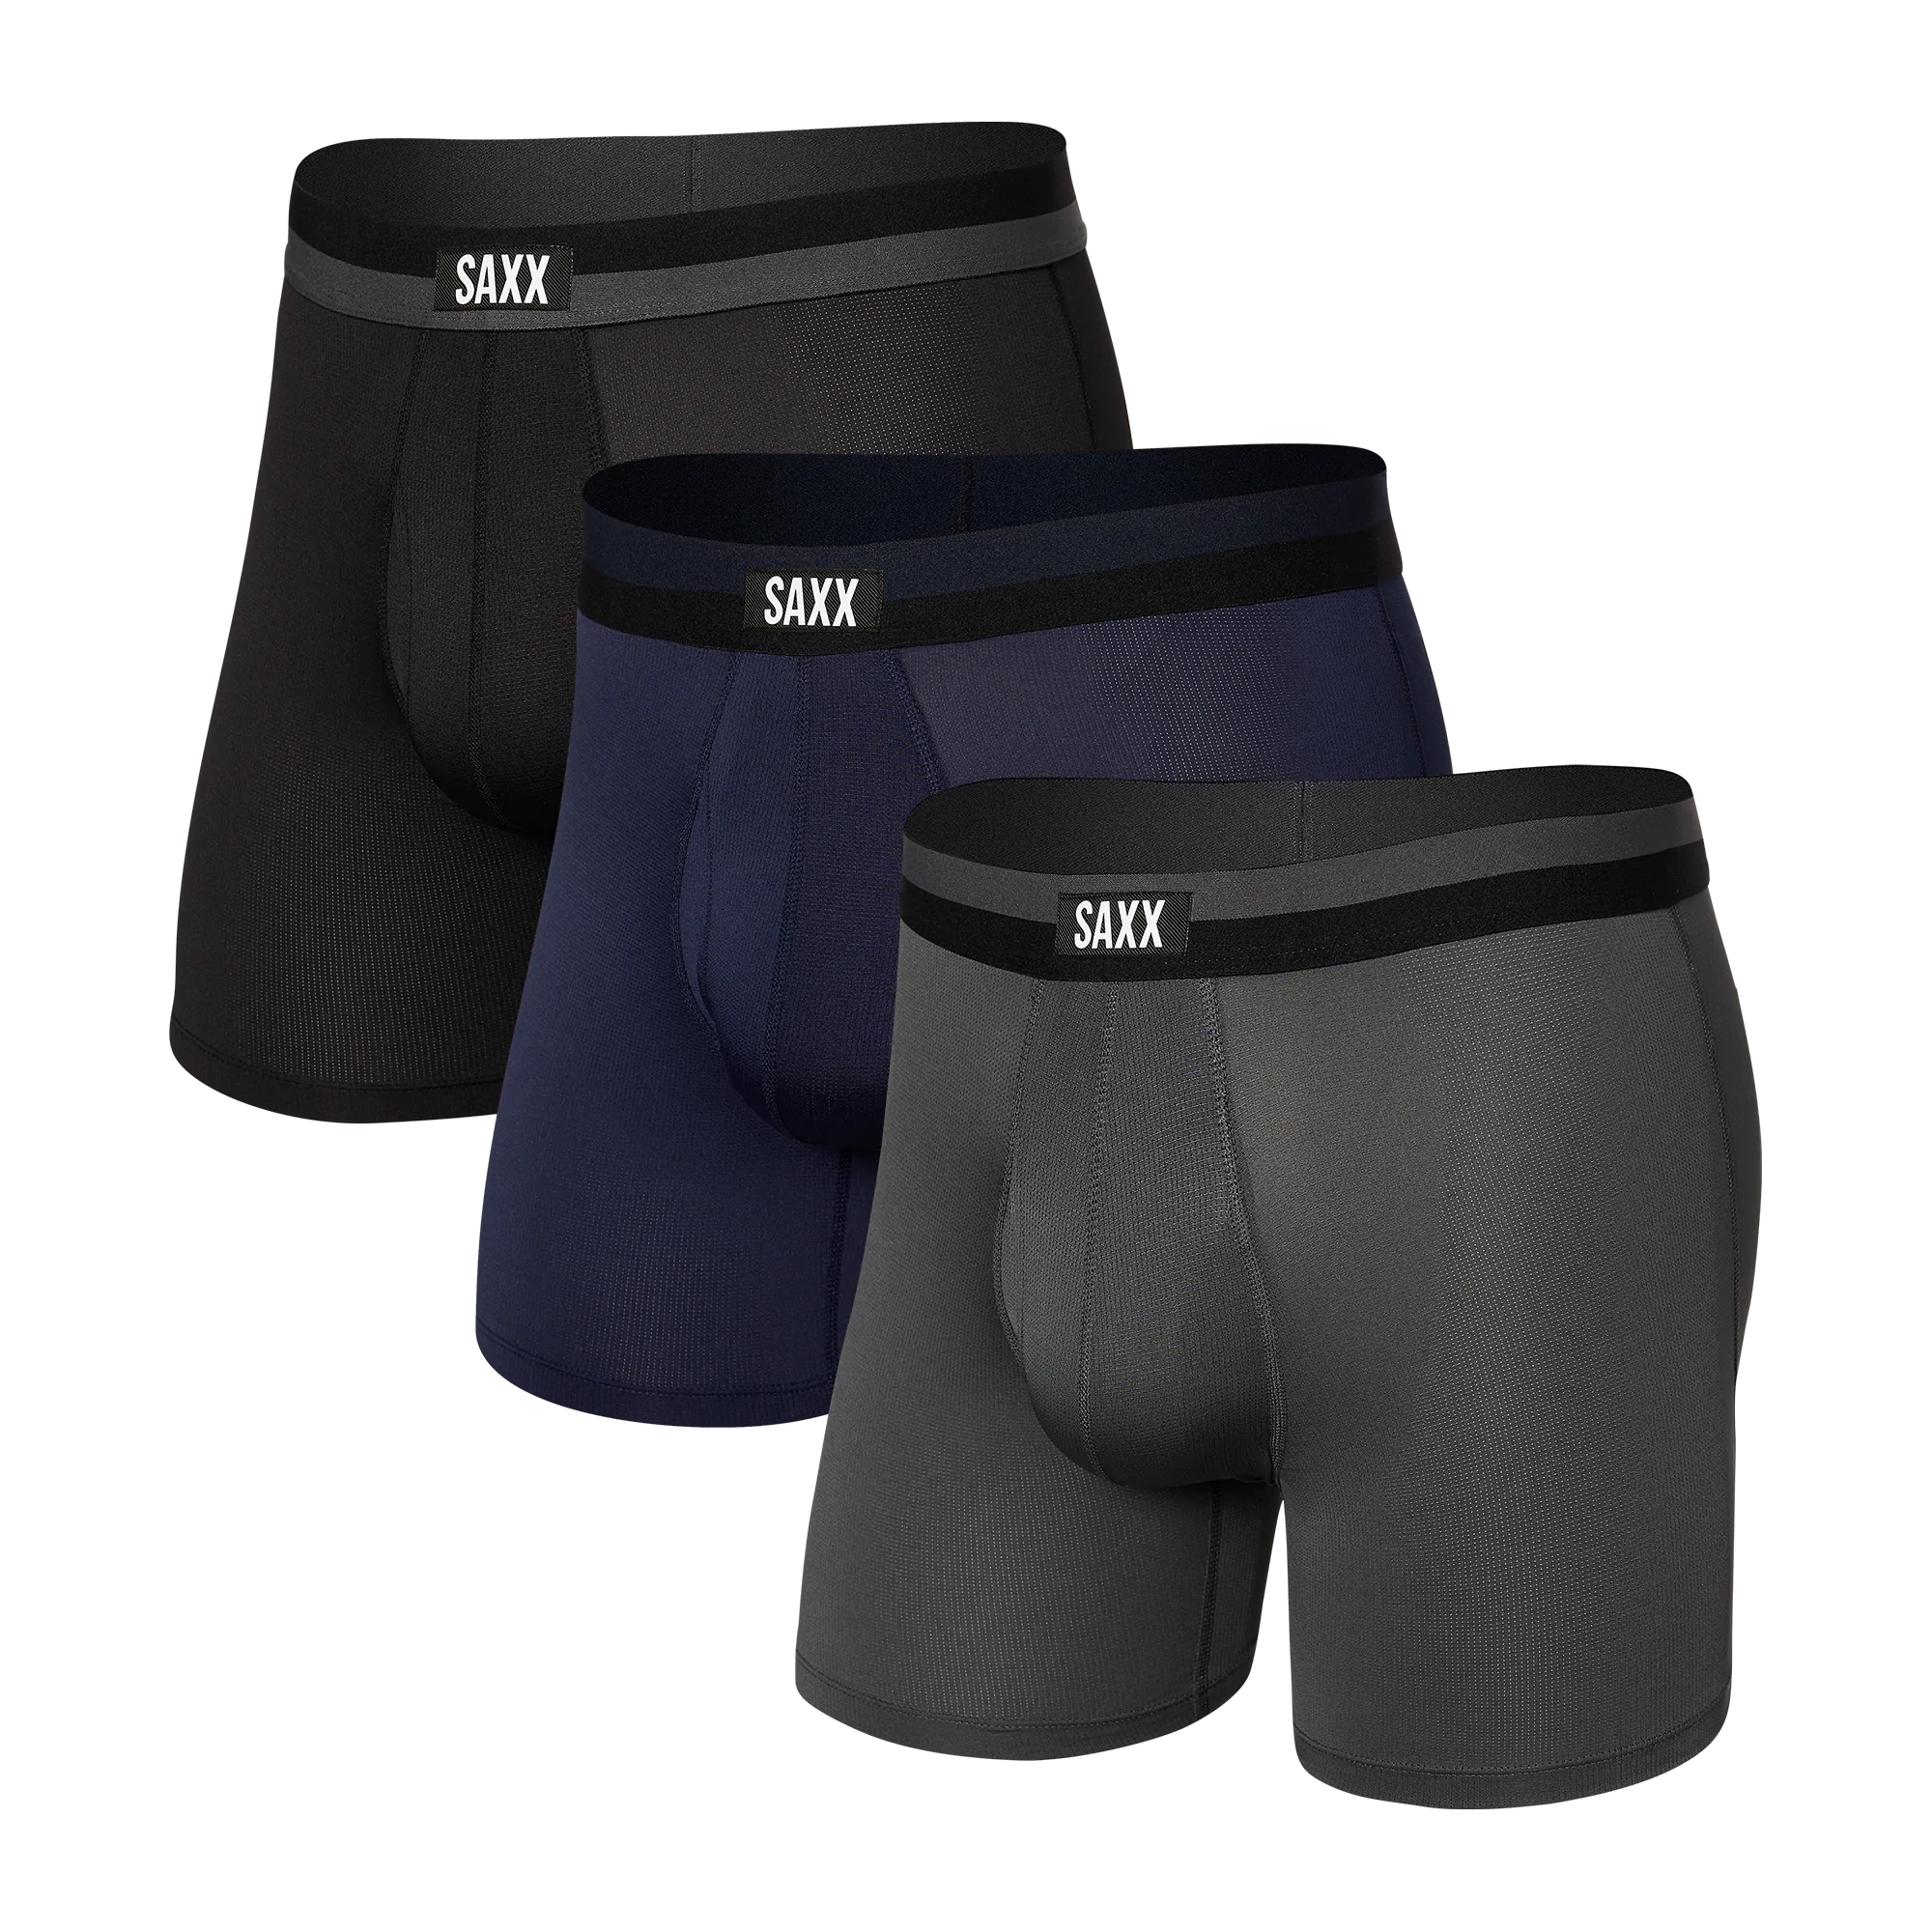 Men's Nylon Long Leg Boxer Briefs, 3-pack